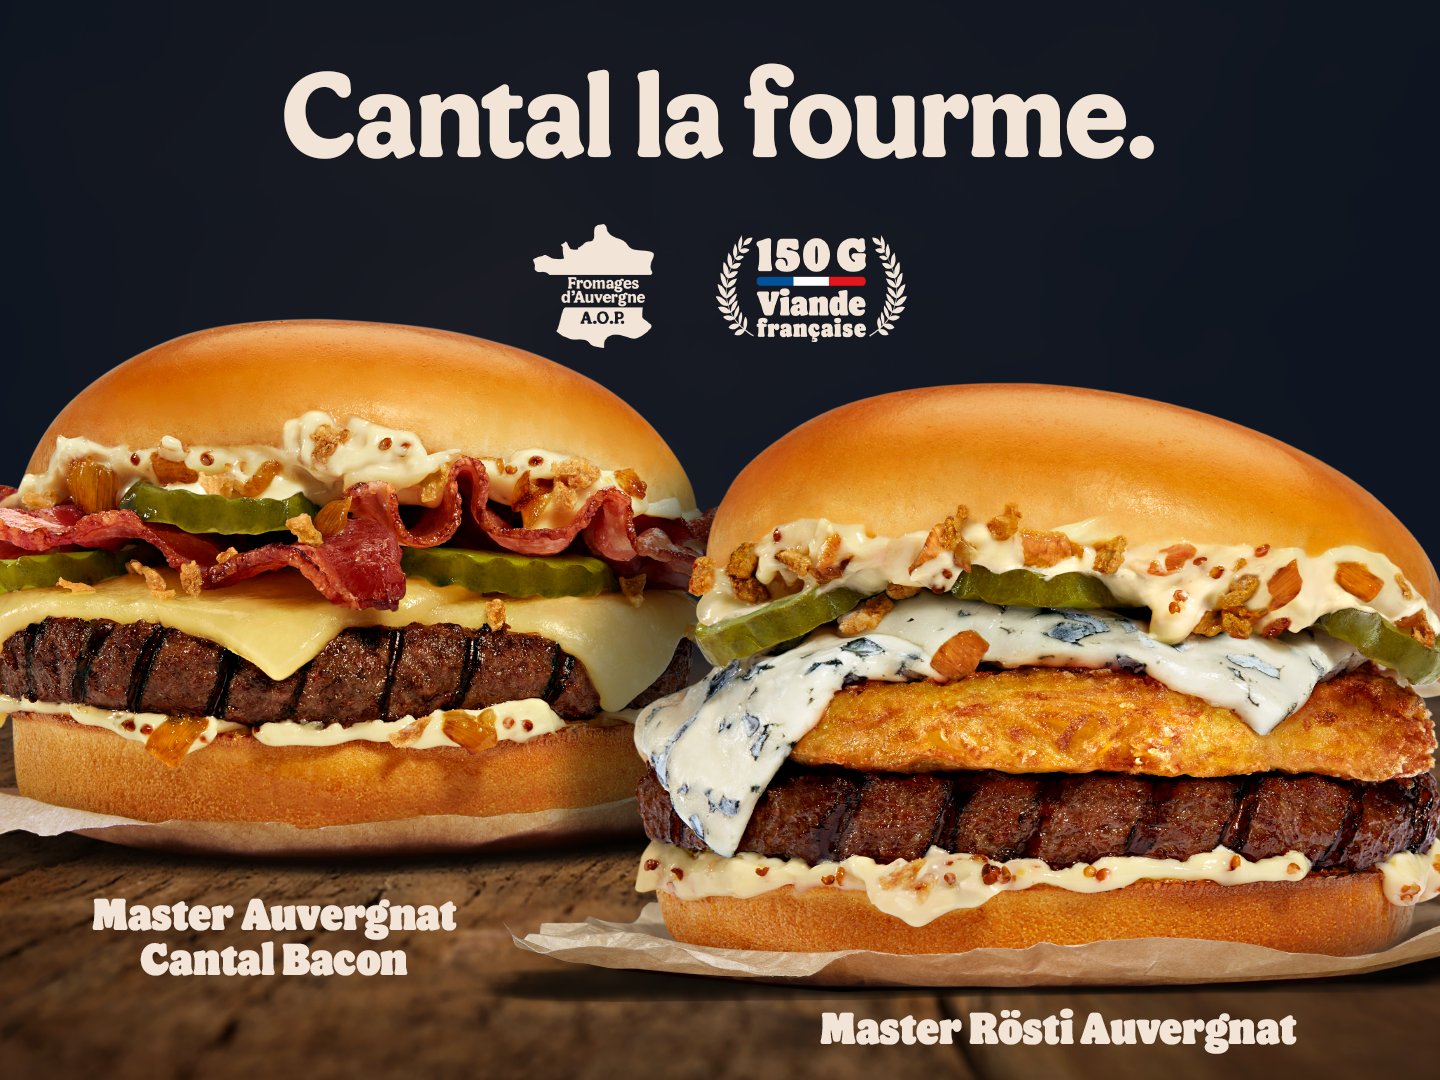 Burger King France on X: Si vous n'avez rien compris à notre précédent  tweet, c'est que vous avez déjà compris que le jeu Blanc Manger Coco Junior  arrive dans les menus enfants.